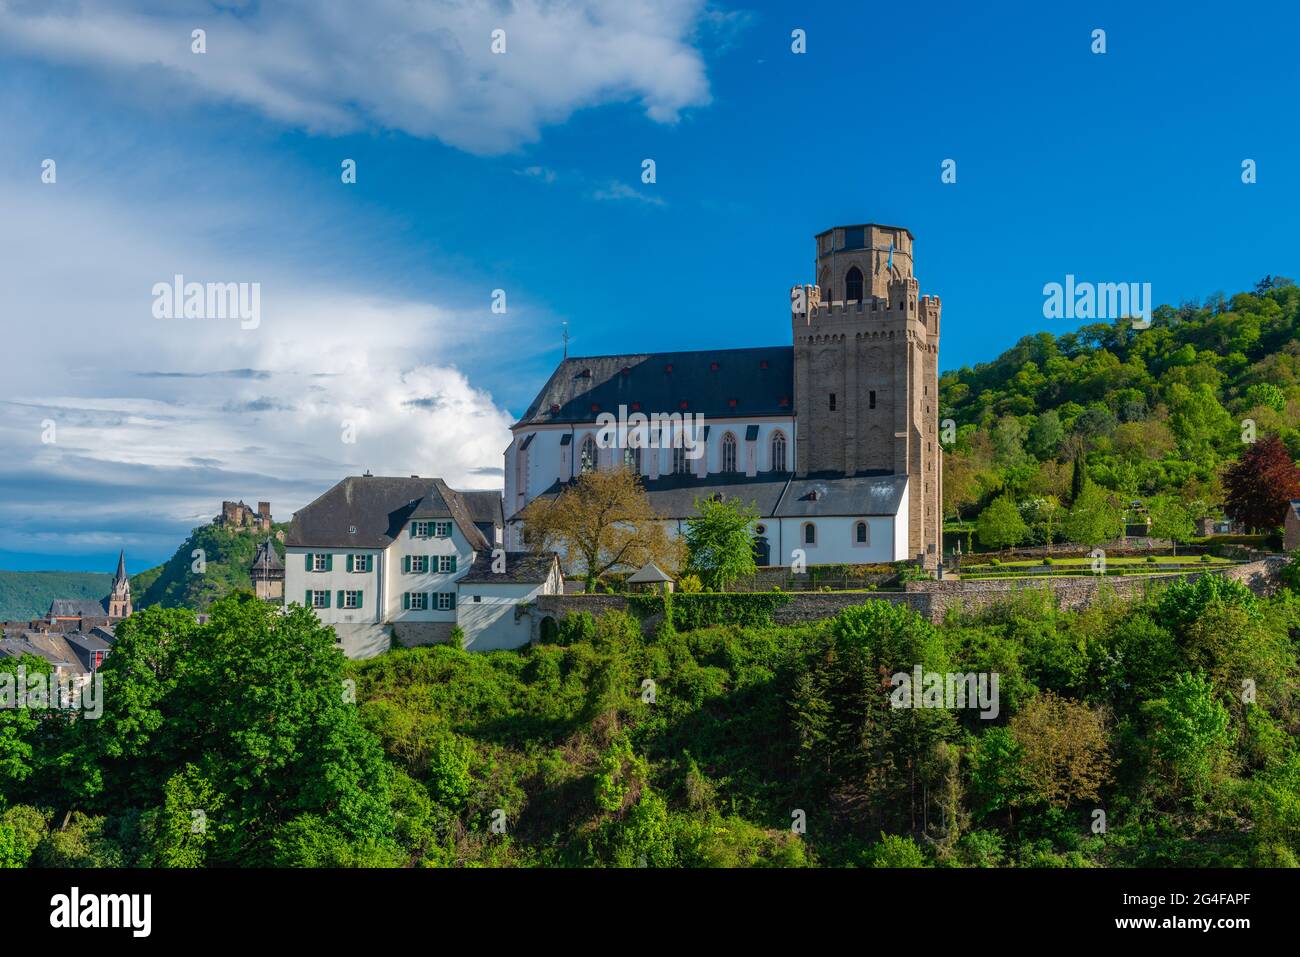 Sakrale Befestigung St. Martin´s Kirche in der historischen Stadt Oberwesel, UpperMittelrheintal, UNESCO-Weltkulturerbe, Rheinland-Pfalz, Deutschland Stockfoto